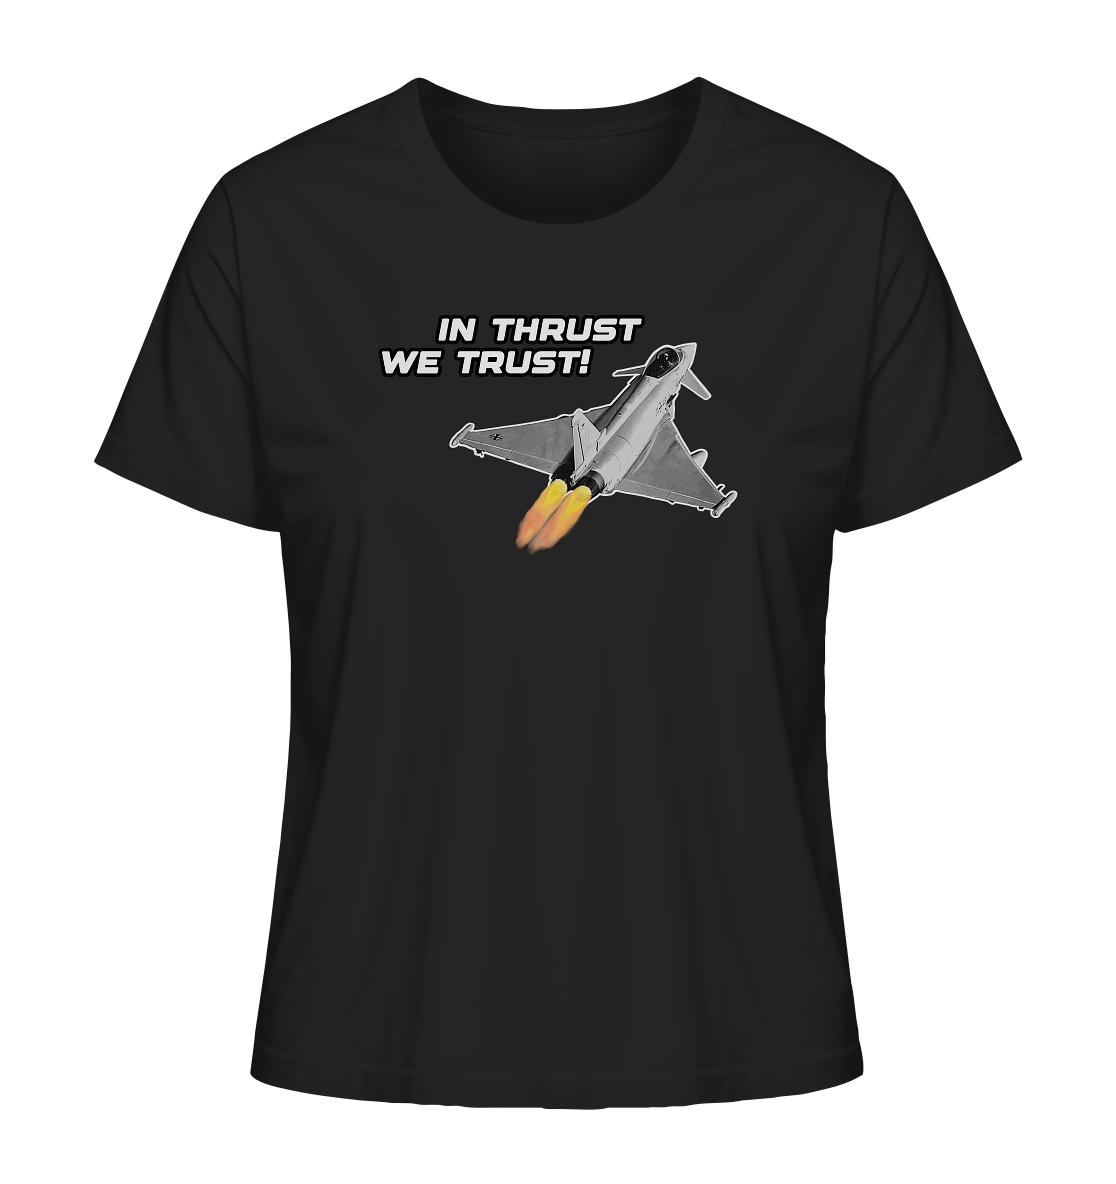 In thrust we trust - Ladies Organic Shirt